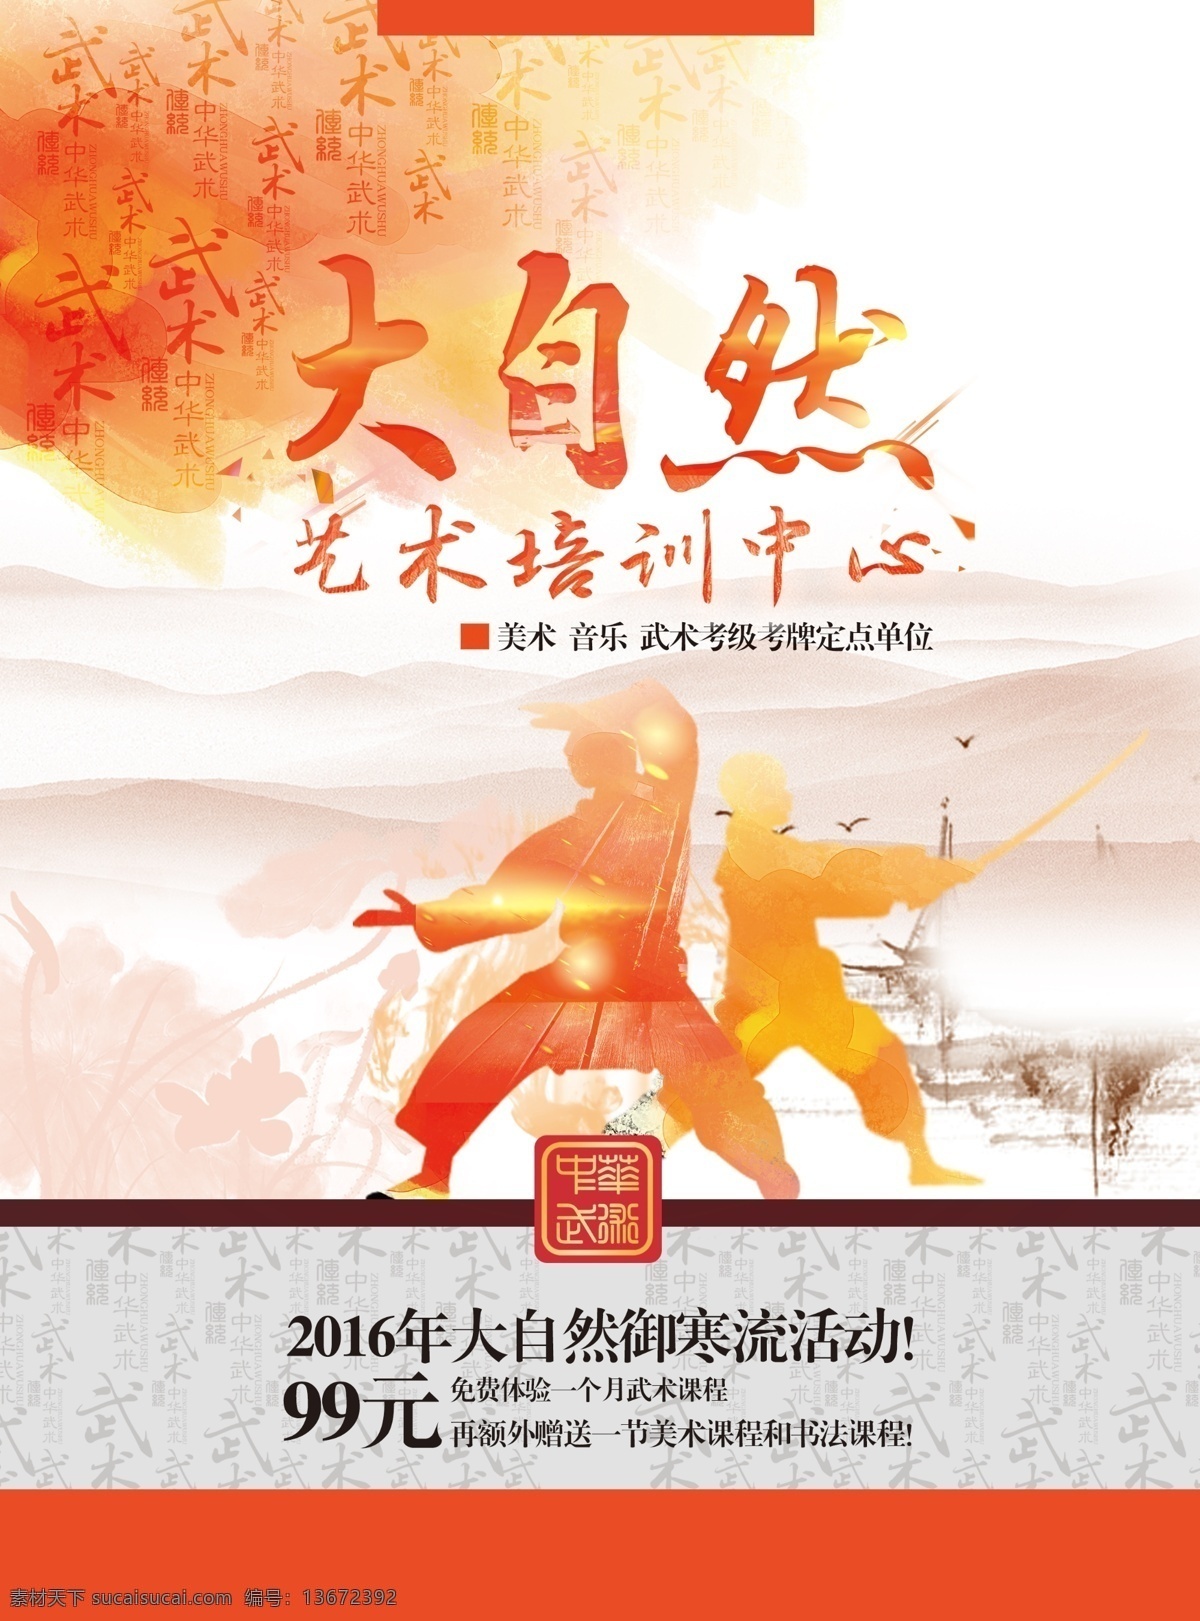 武术 艺术 教育培训 海报 教育 培训 寒假 橙色 中国风